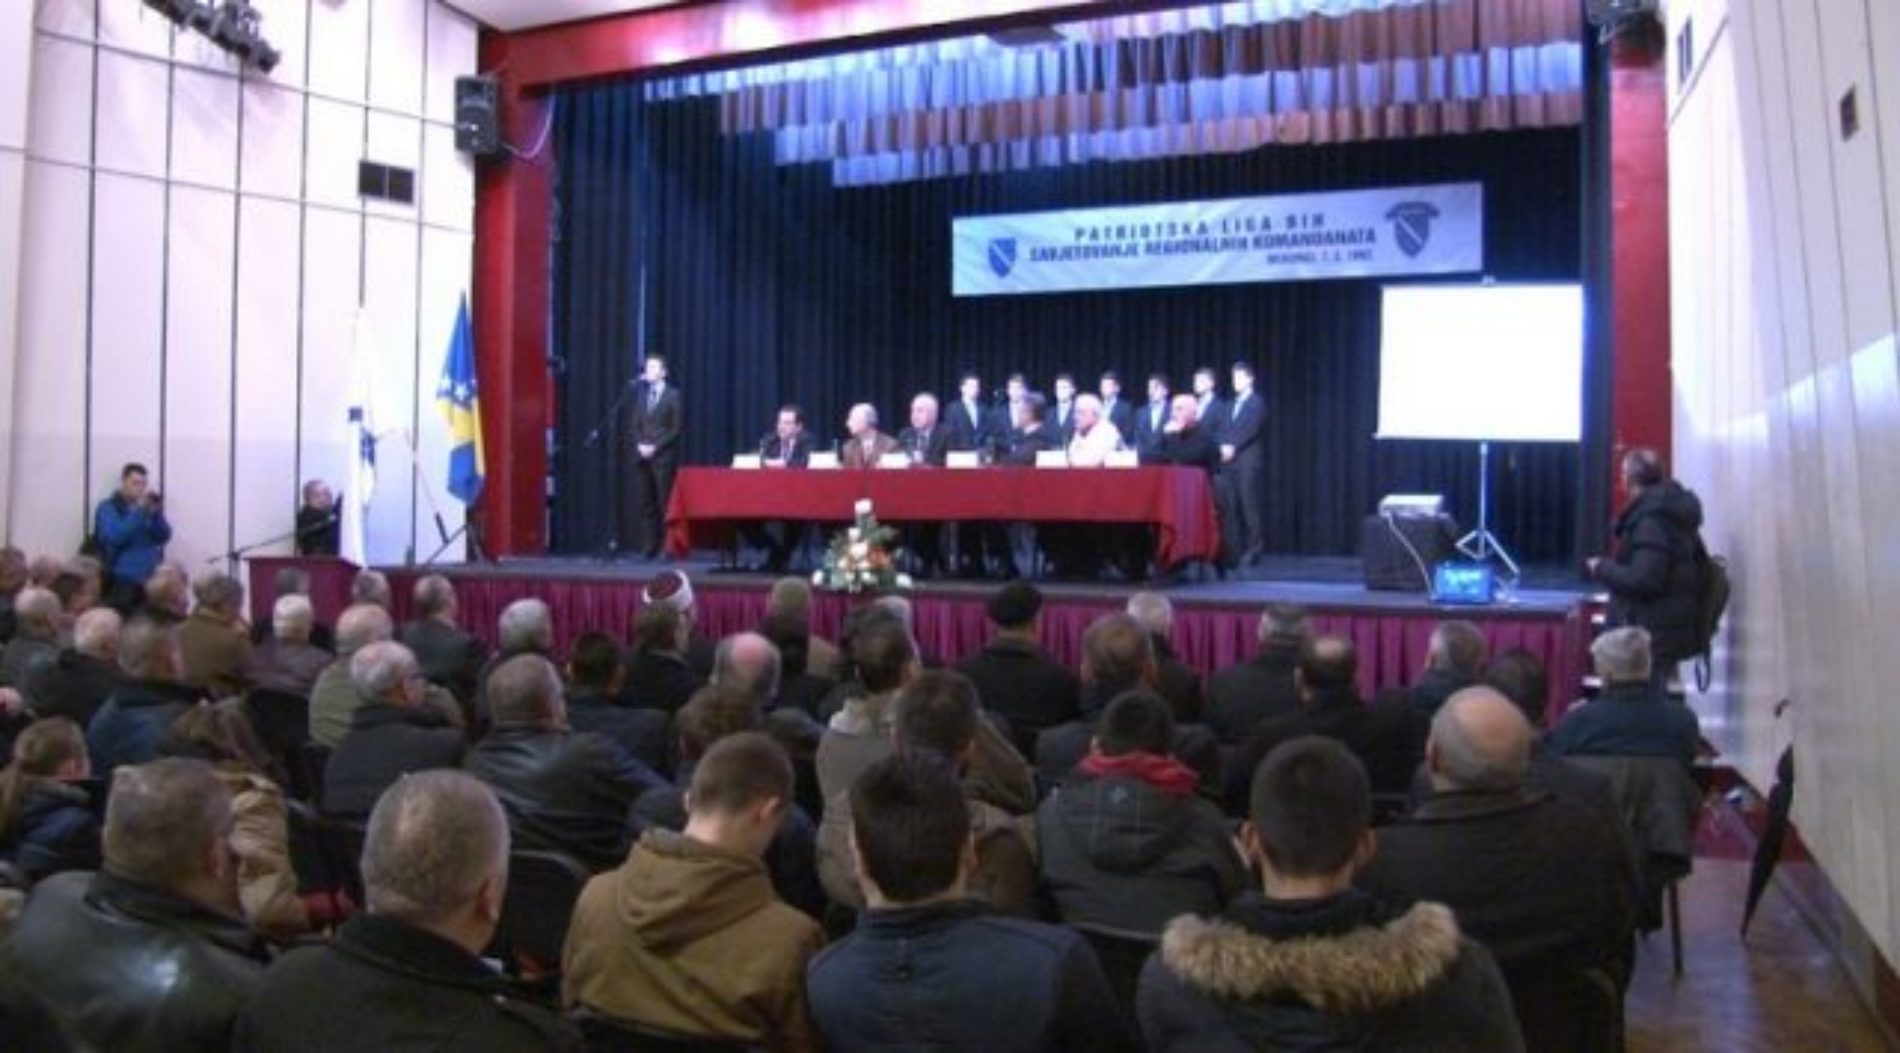 U Travniku obilježena 25. godišnjica savjetovanja komandanata Patriotske lige